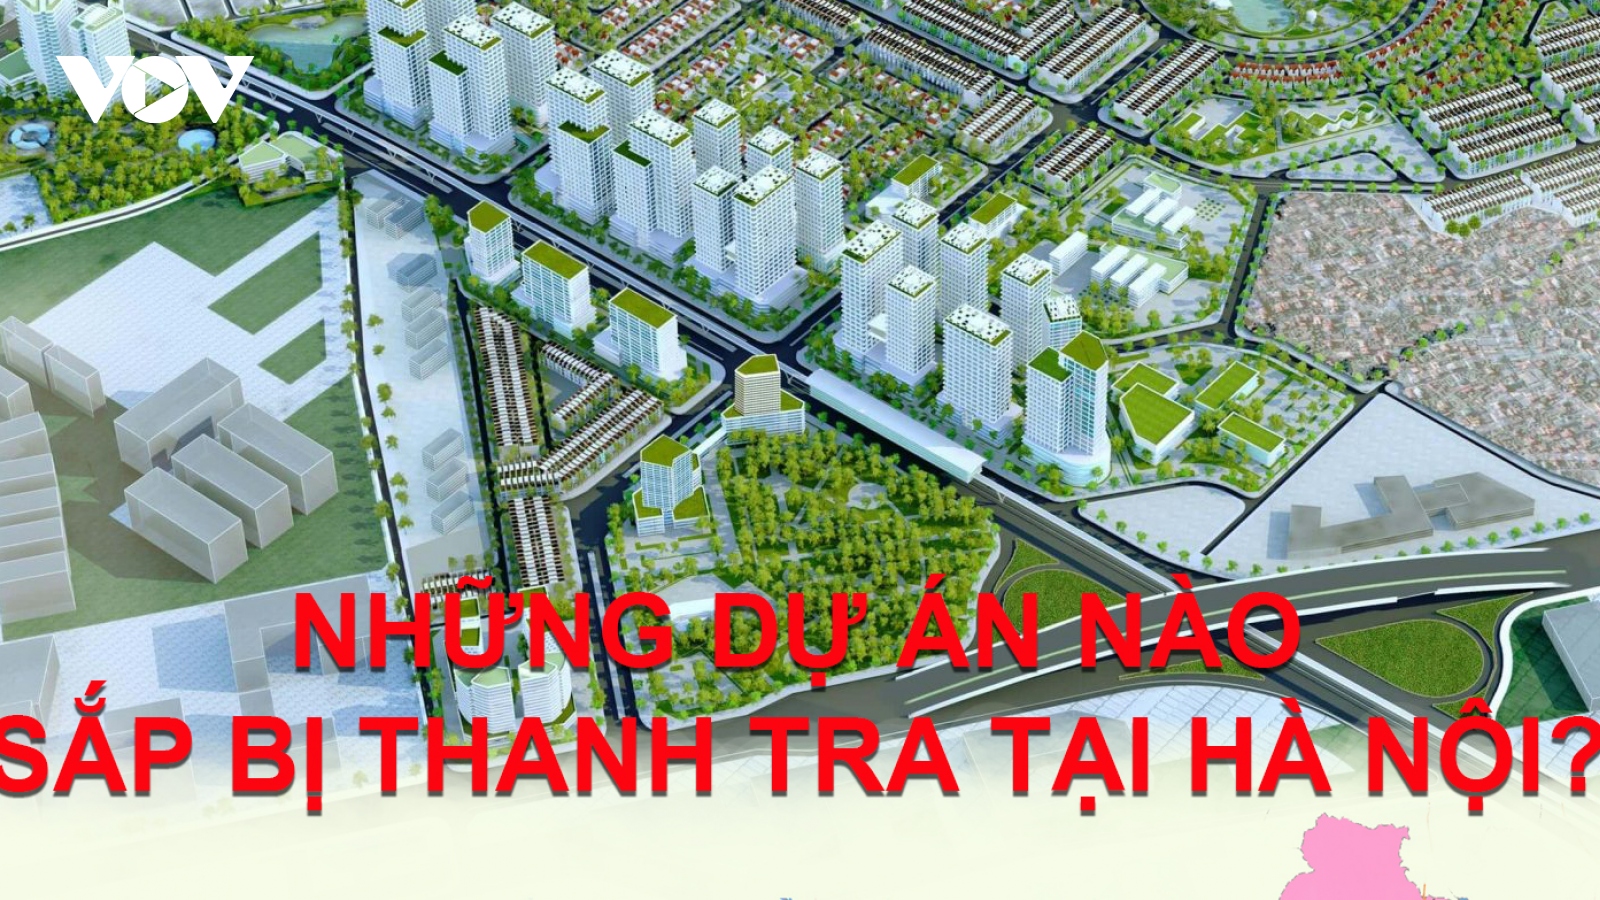 Những dự án nào sắp bị thanh tra tại Hà Nội?